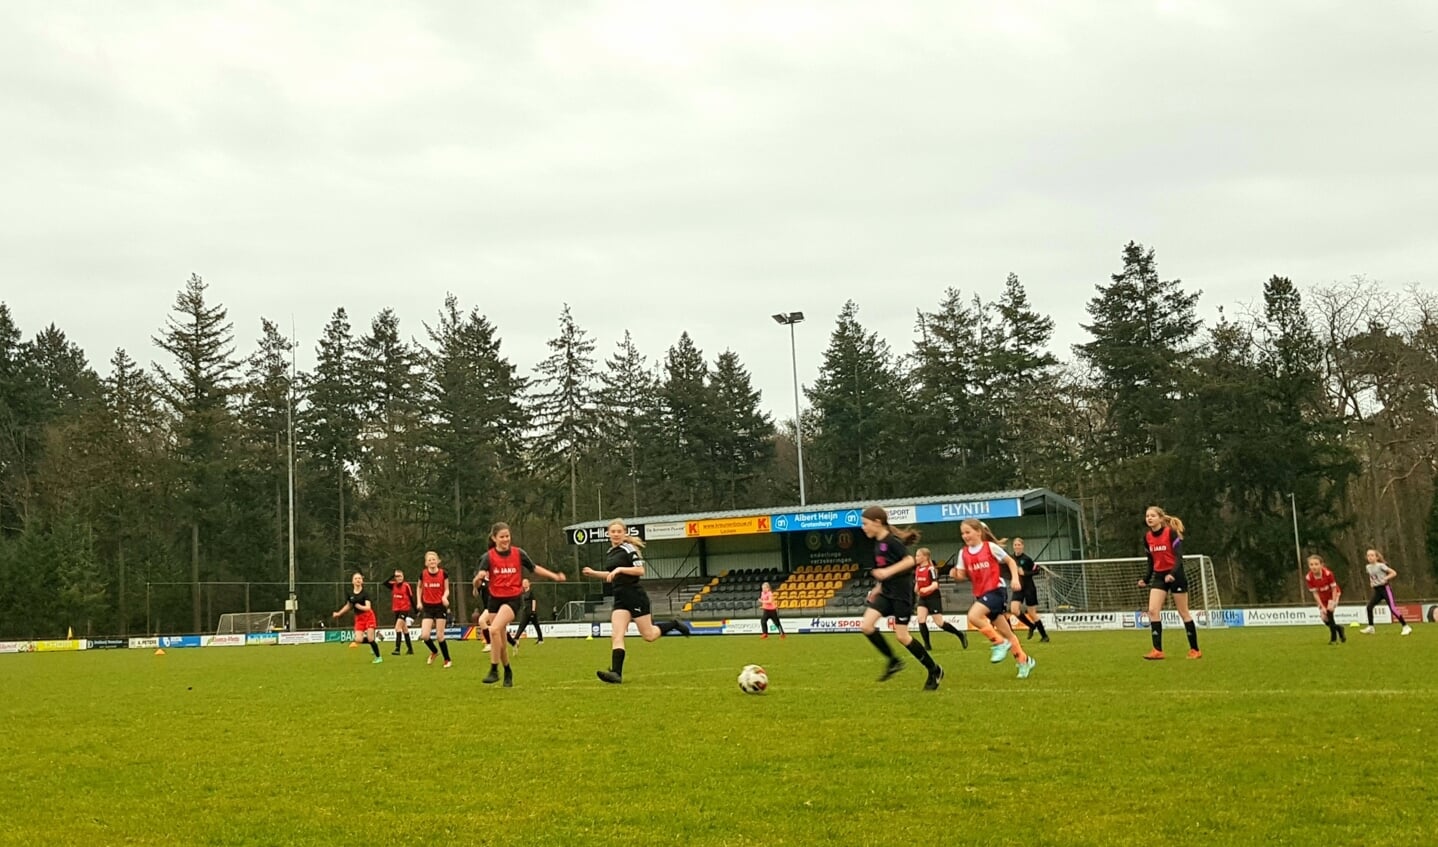  Via speciale ‘vriendinnen-trainingen’ wil VV Vorden meiden kennis laten maken met de voetbalsport en de vereniging. Foto: PR